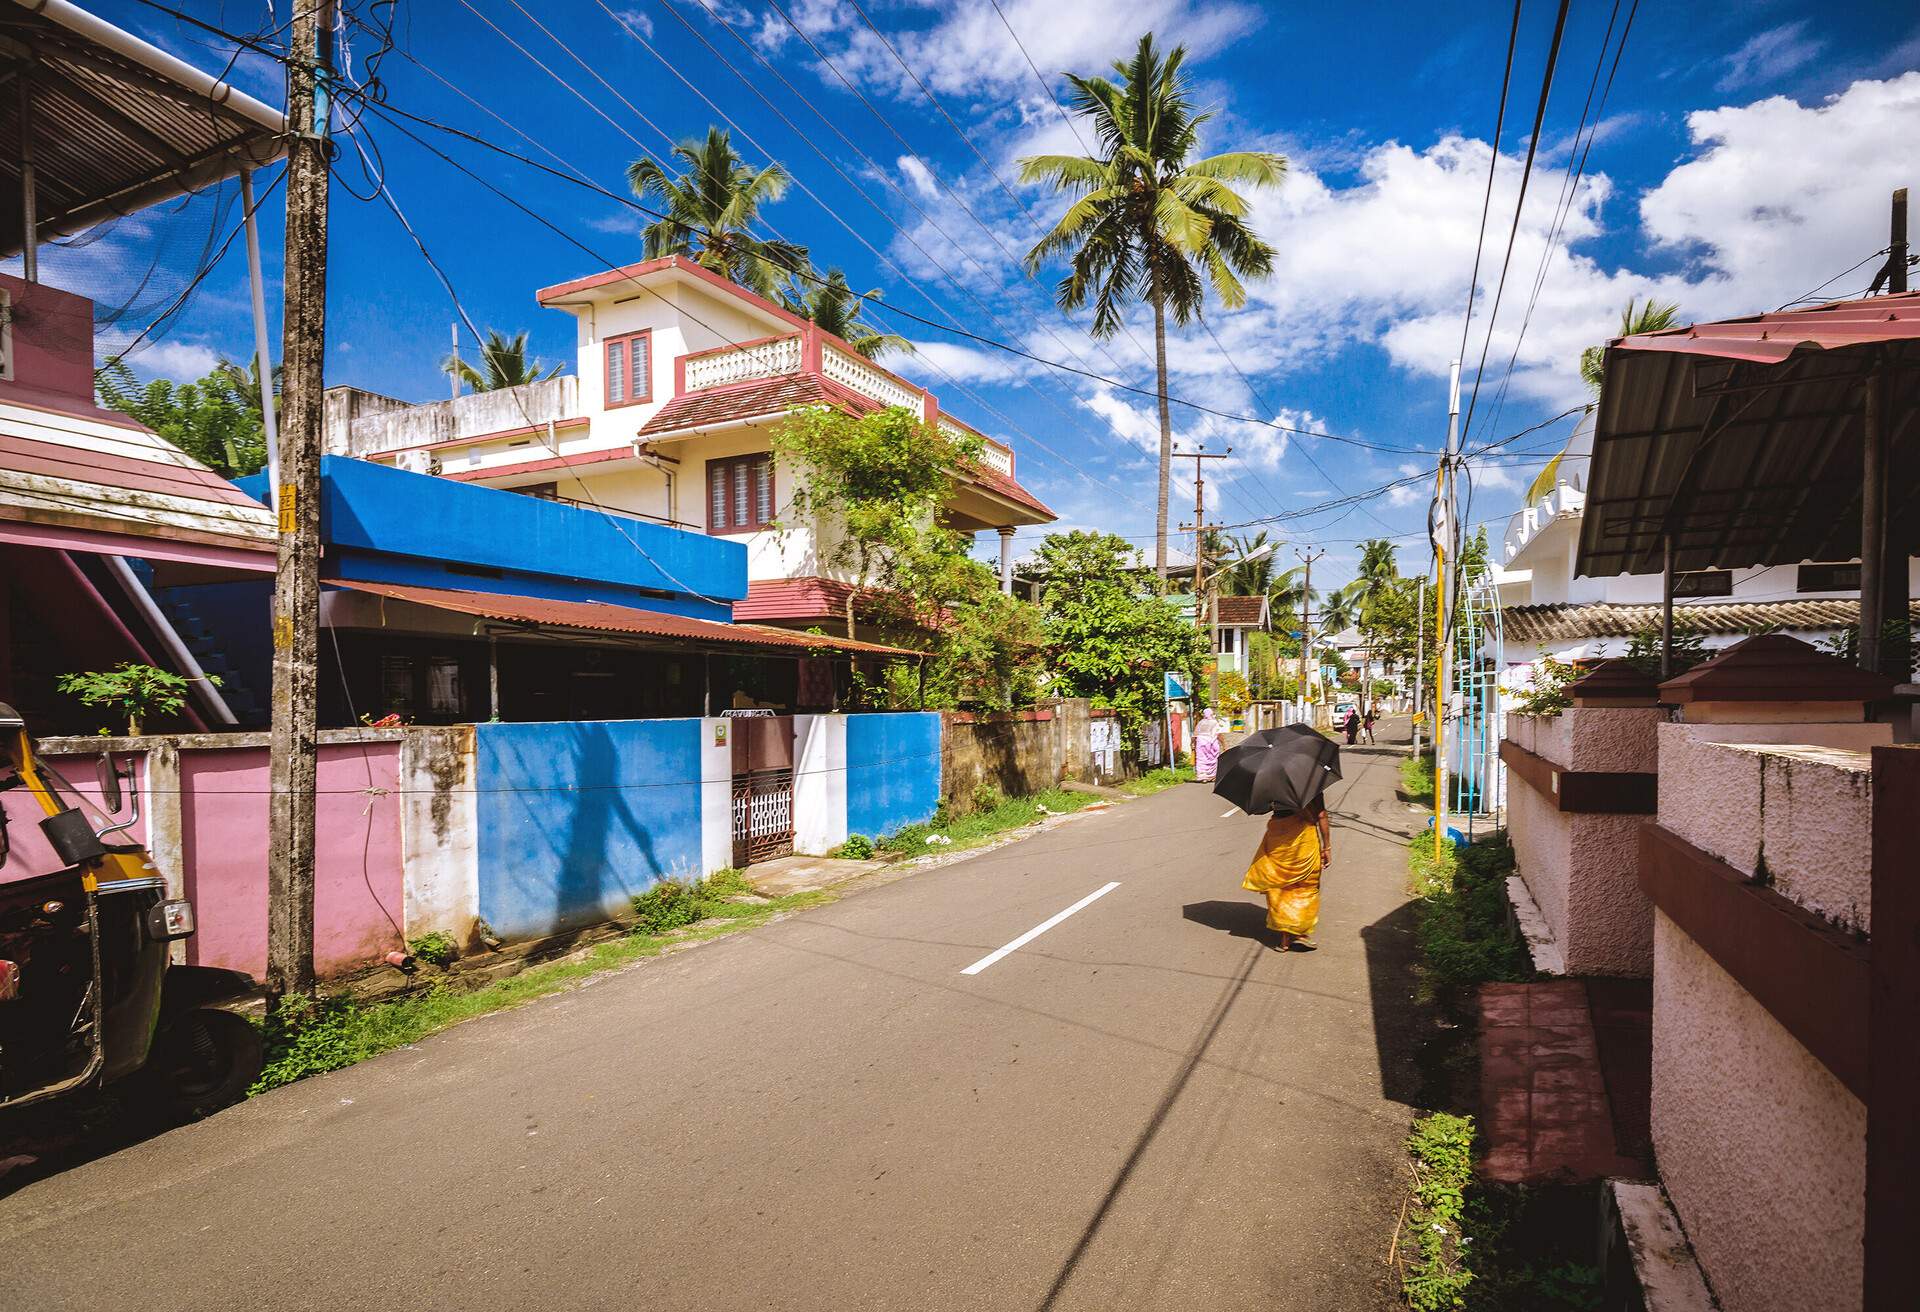 The streets of Kochi, Kerala, India